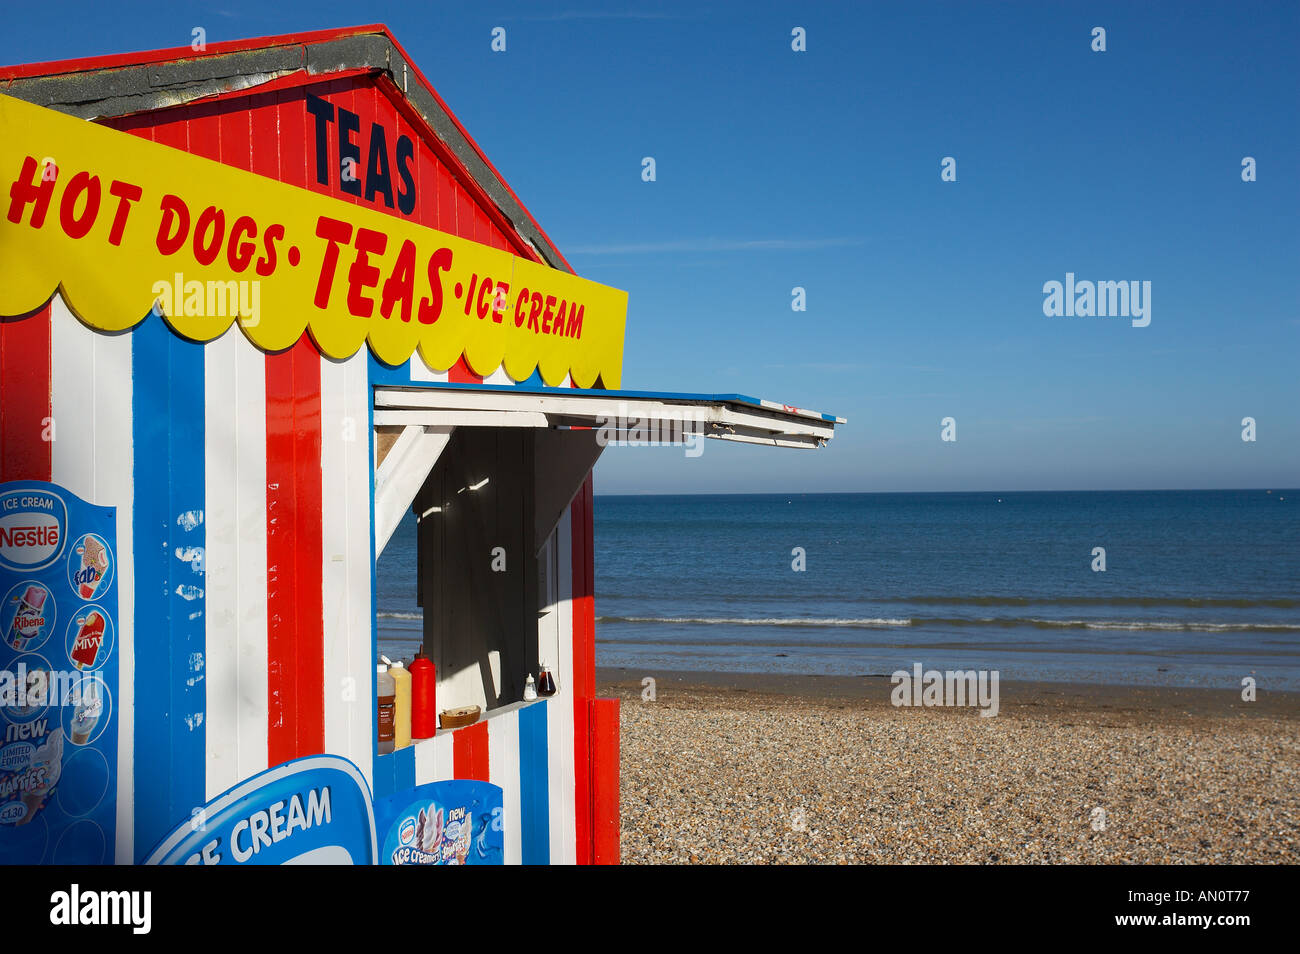 Détail de beach hut vend de la crème glacée etc Weymouth Dorset England UK Banque D'Images